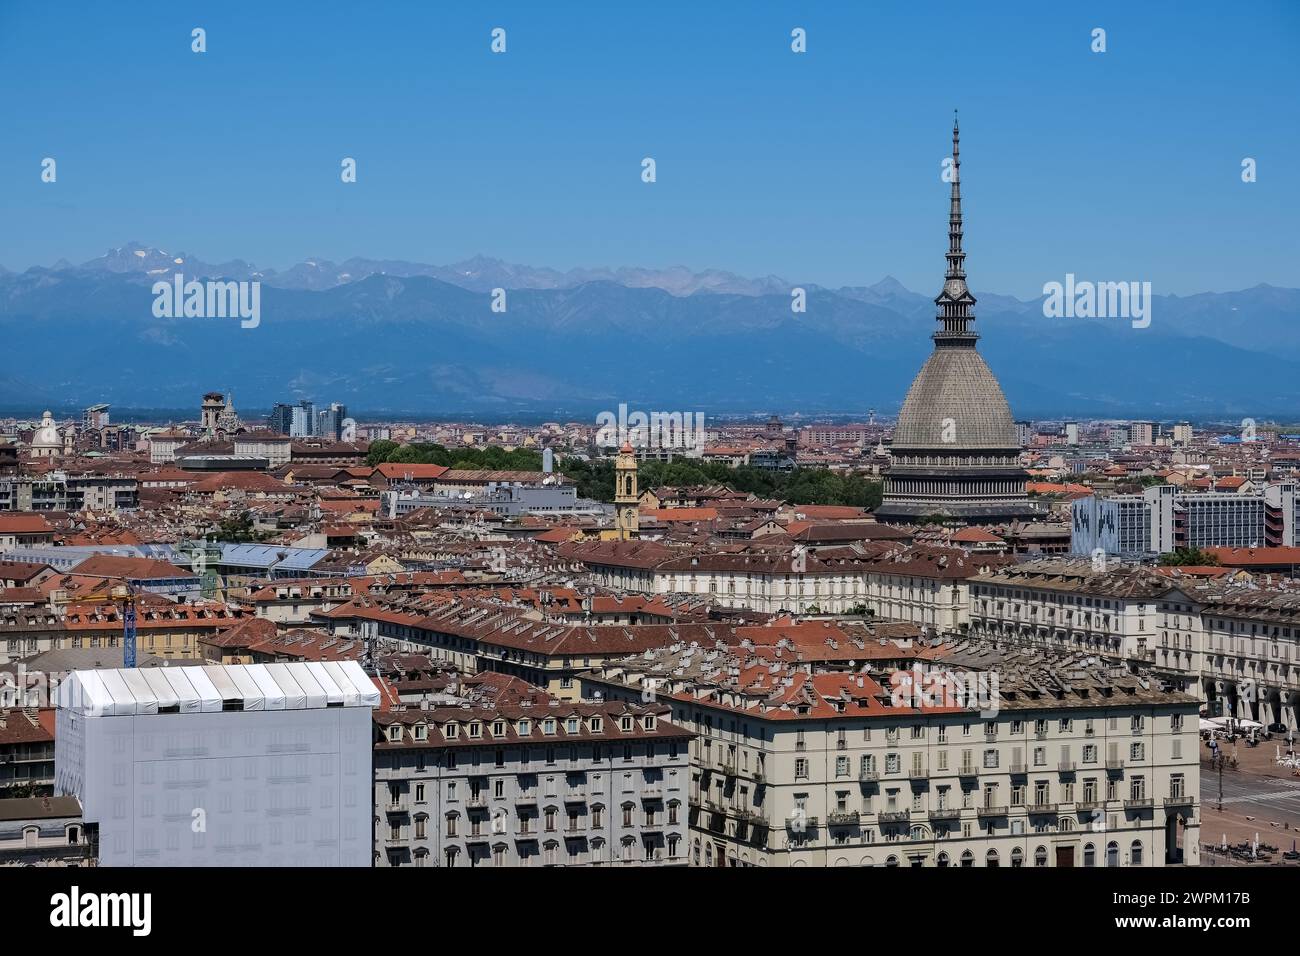 Paysage urbain avec le monument emblématique mole Antonelliana du nom de son architecte, Alessandro Antonelli, Turin, Piémont, Italie, Europe Banque D'Images